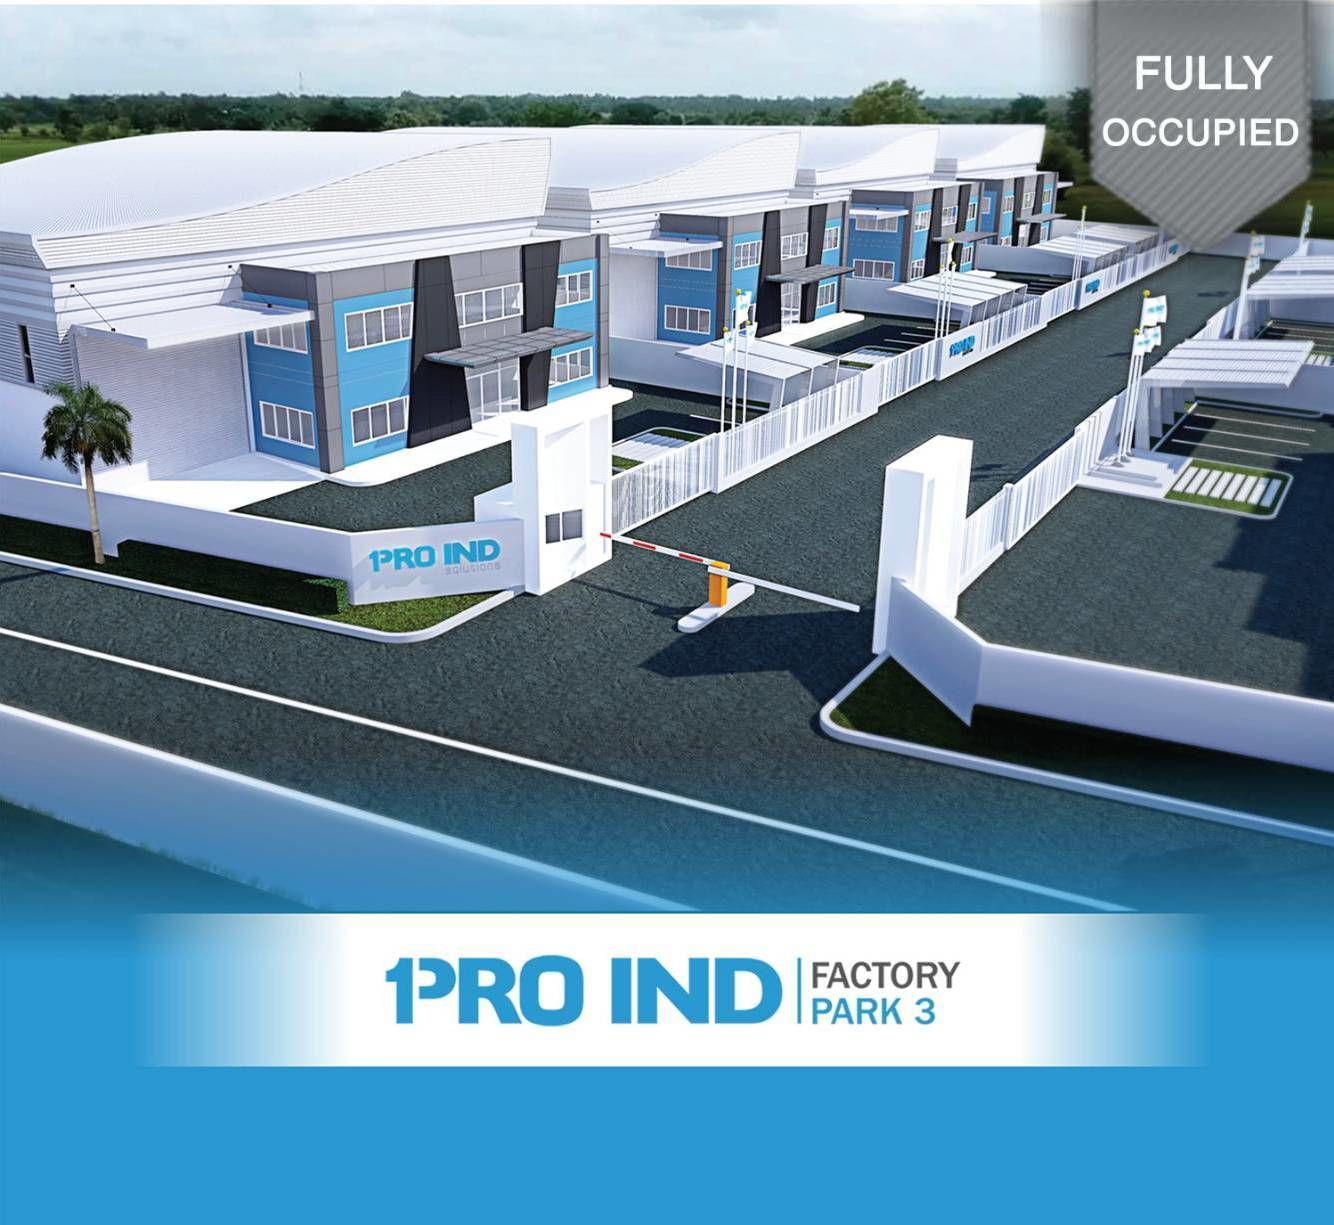 Pro Ind Factory park 3